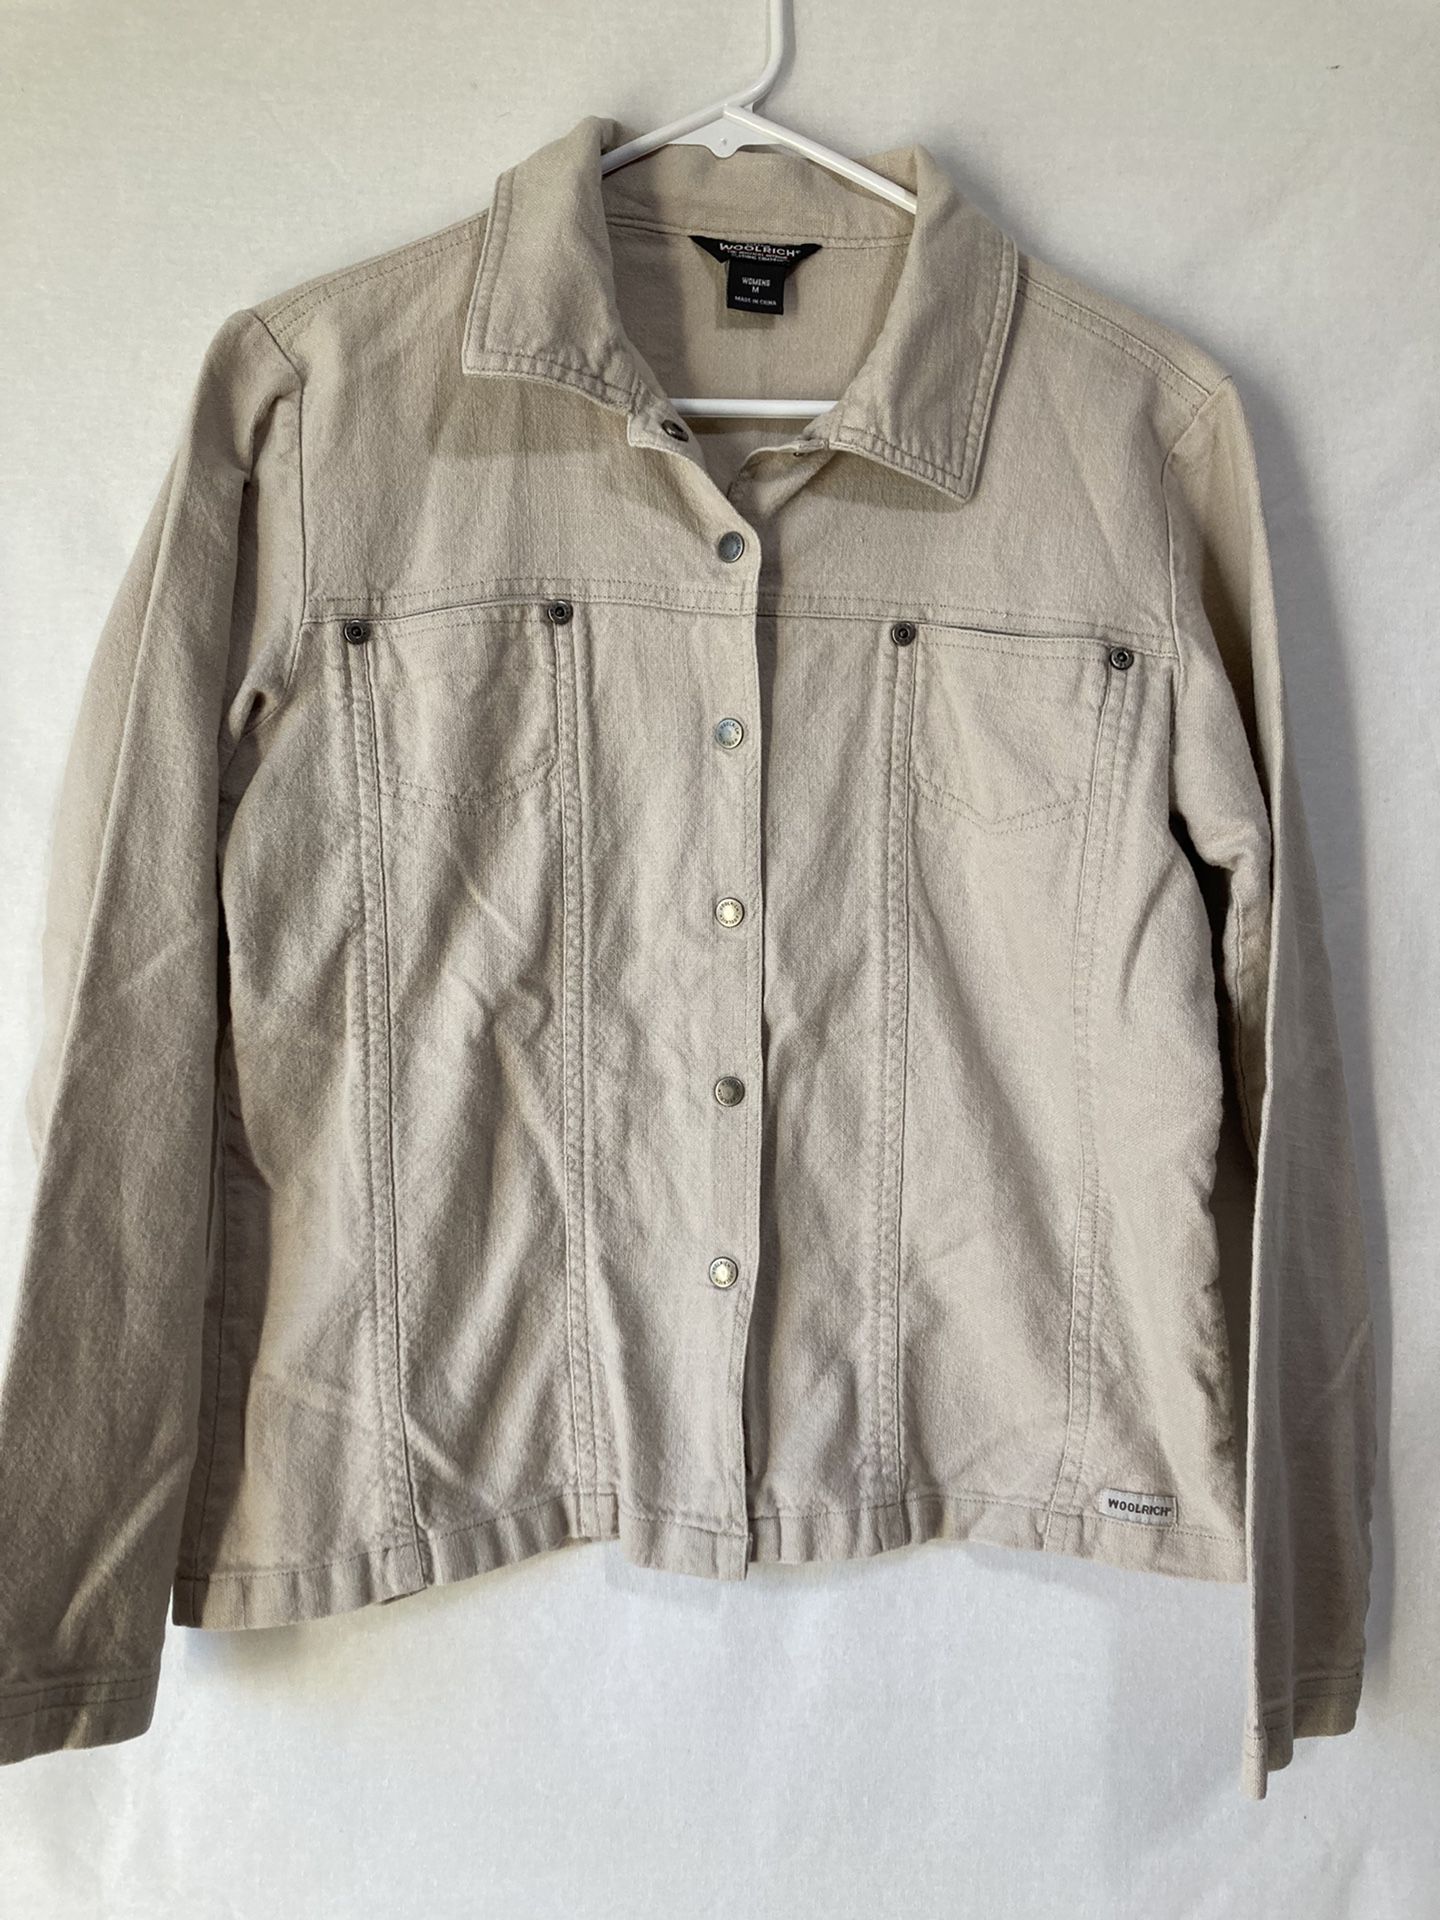 Woolrich Womens Medium Snap Button Long Sleeve Shirt / Light Jacket Tan Stone 